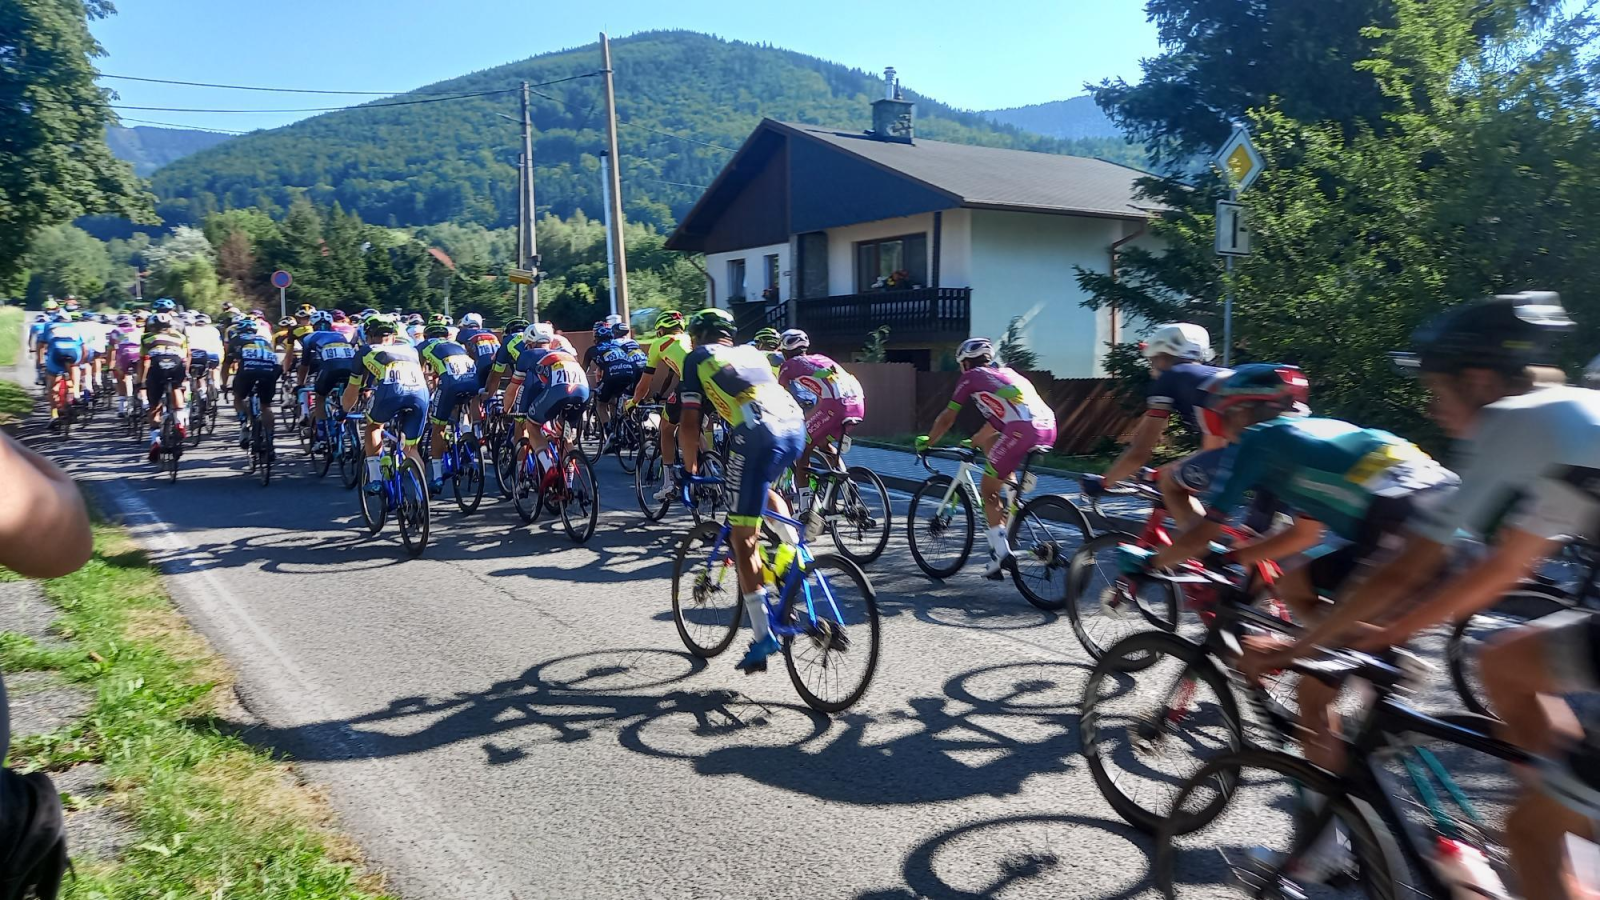 VIDEO: Trojanovicemi se prohnal cyklistický peloton skoro jako na Tour de  France - Novojičínský deník